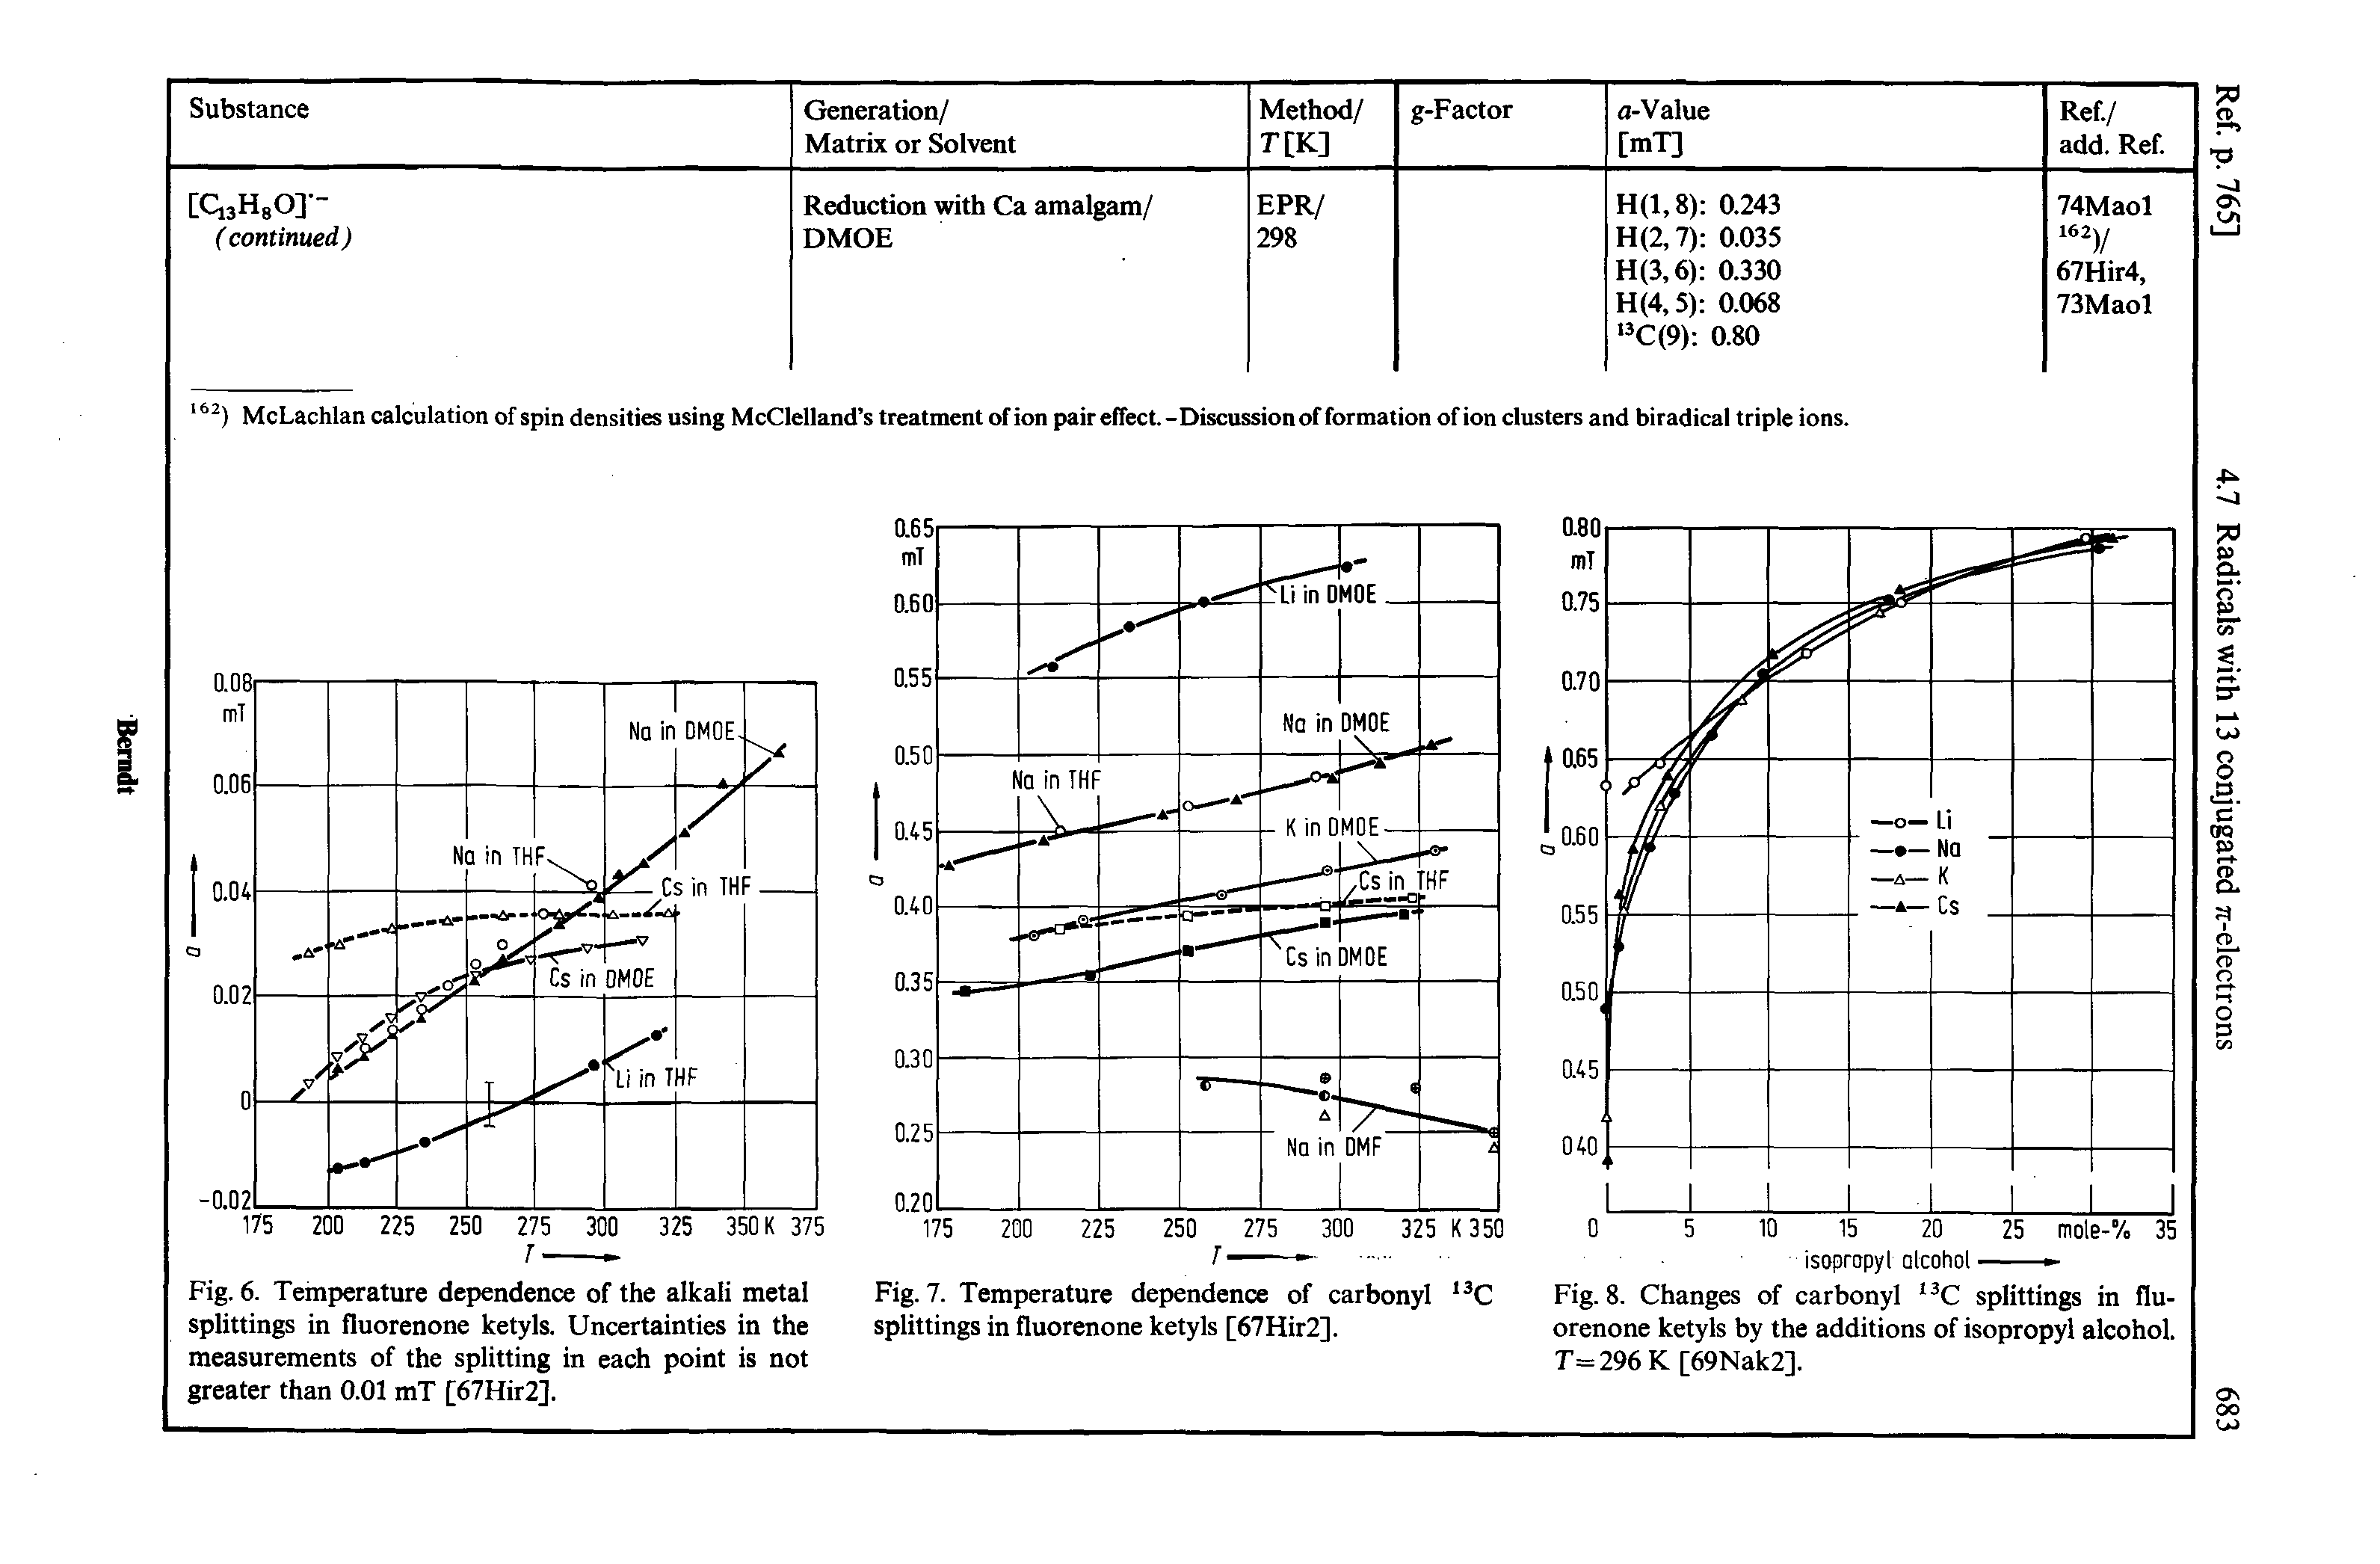 Fig. 7. Temperature dependence of carbonyl splittings in fluorenone ketyls [67Hir2].